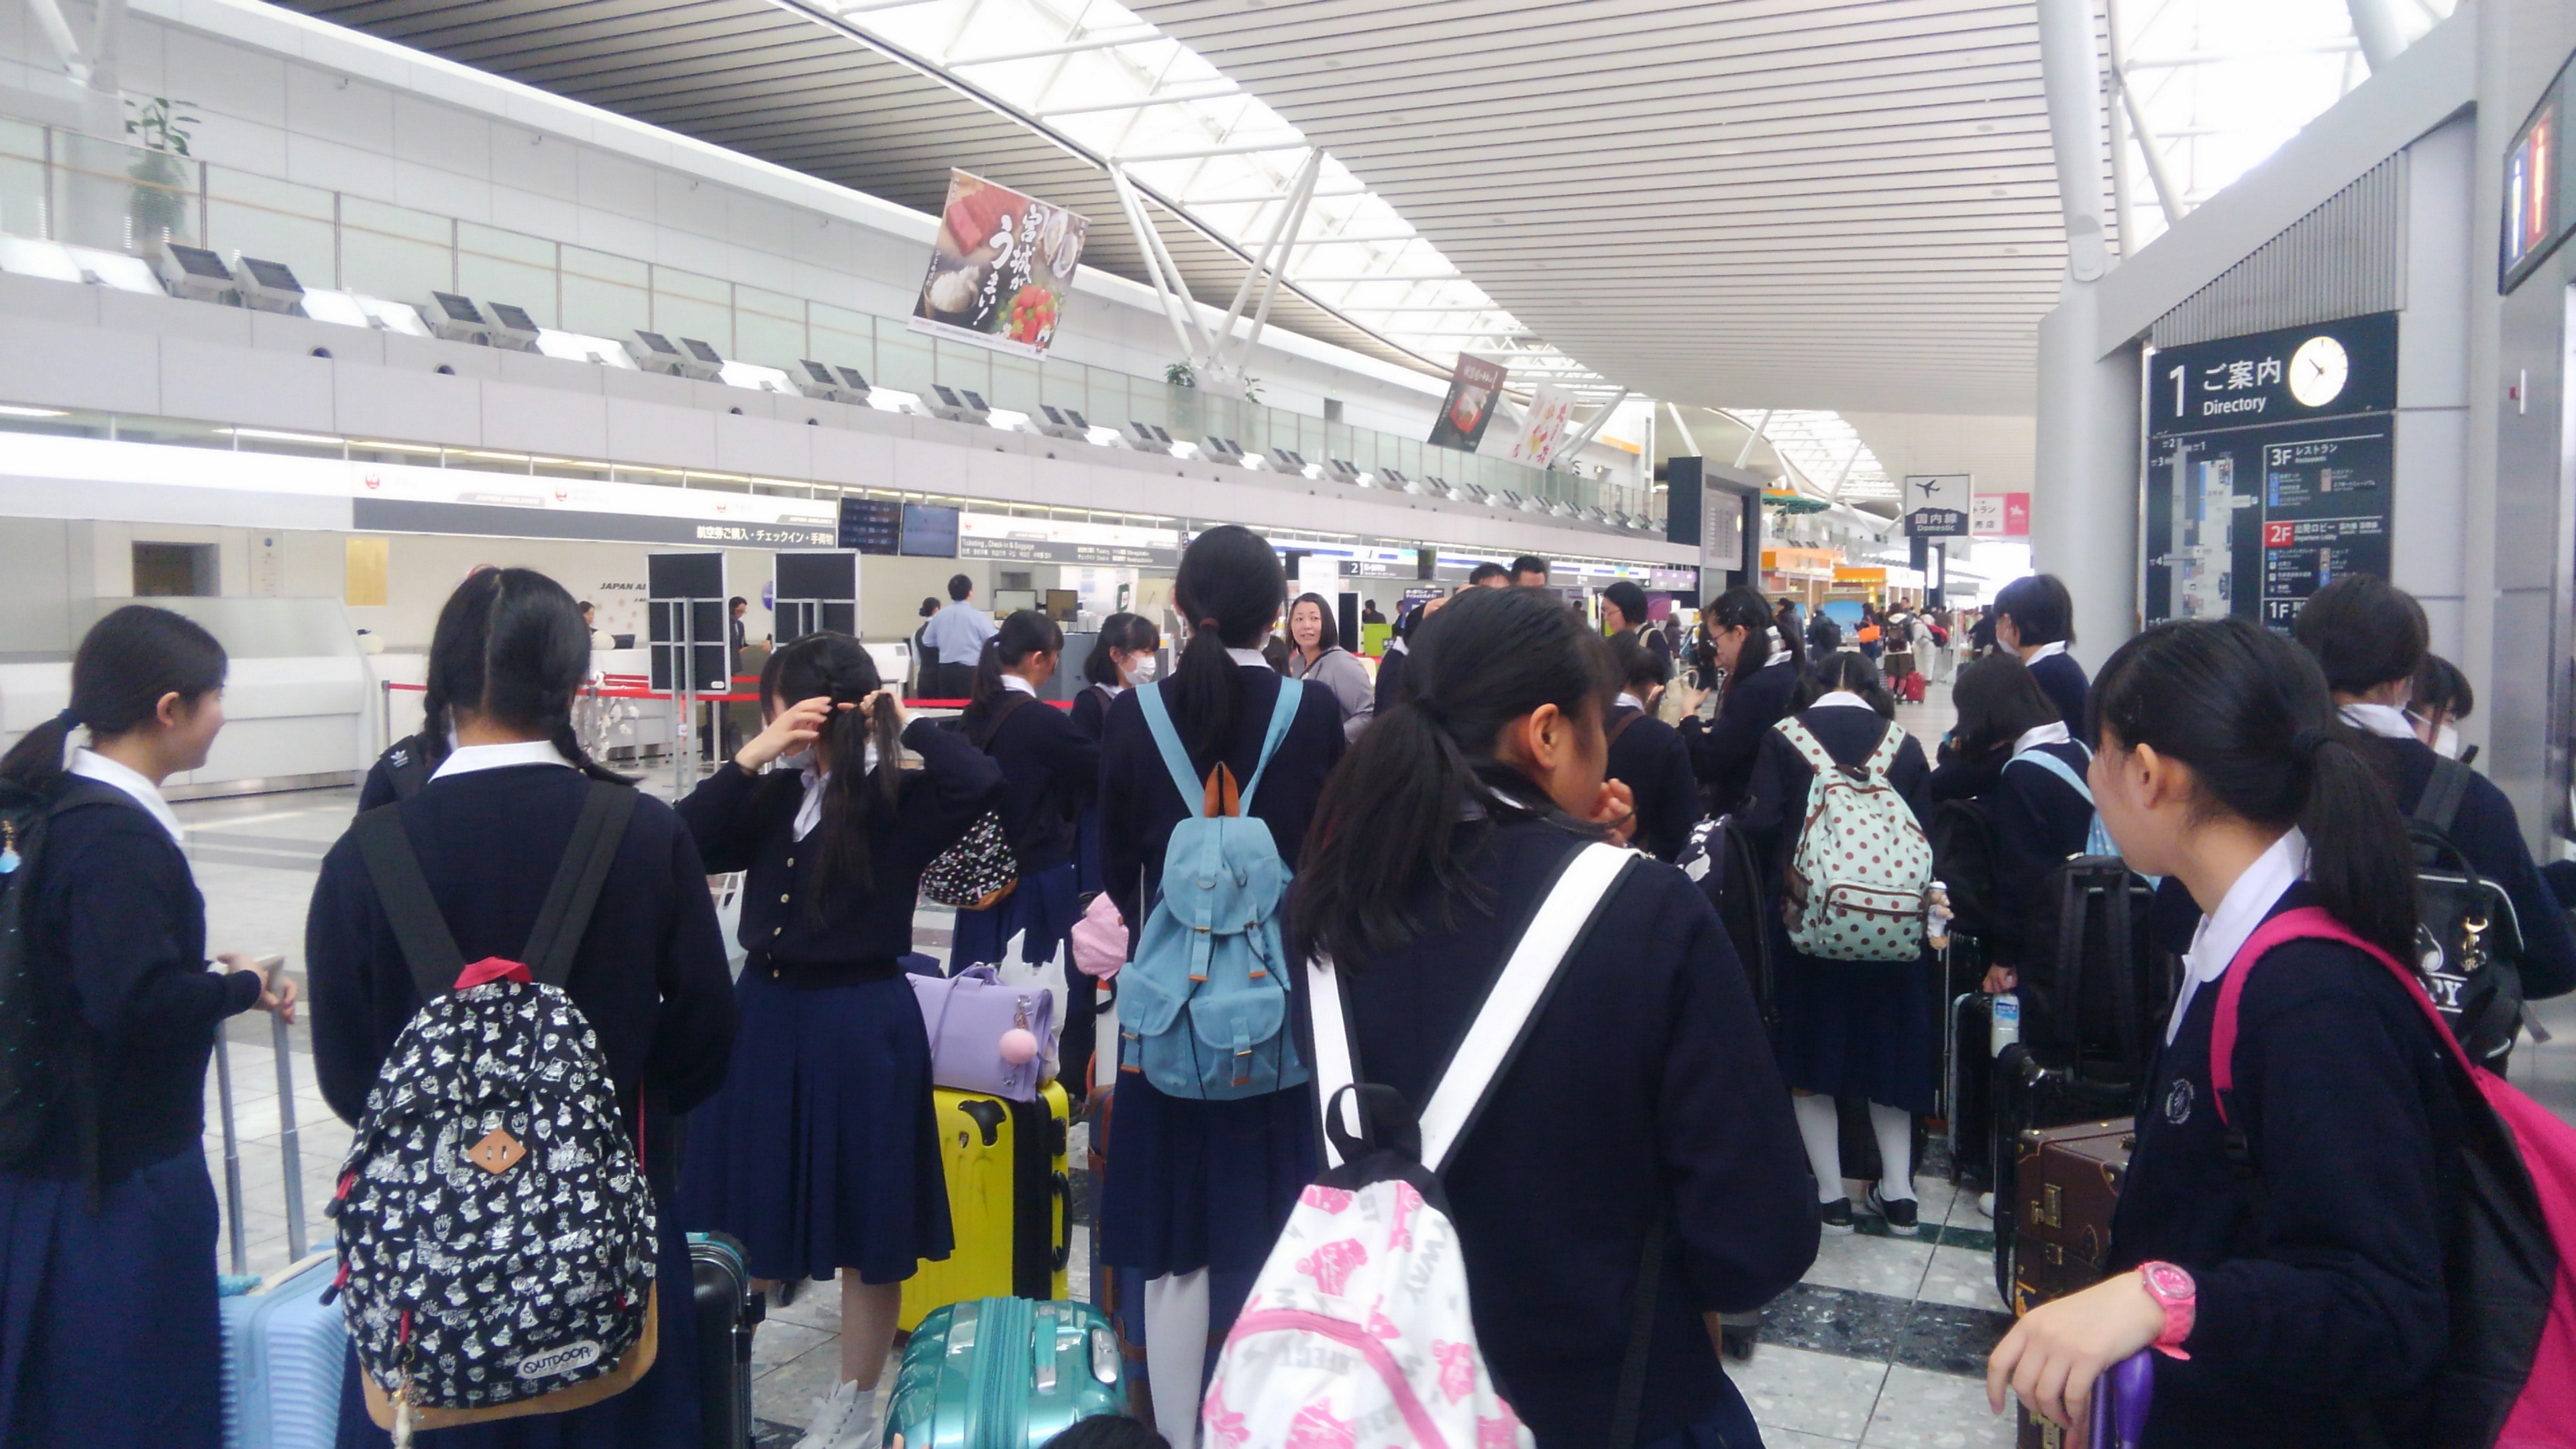 仙台空港到着しました。